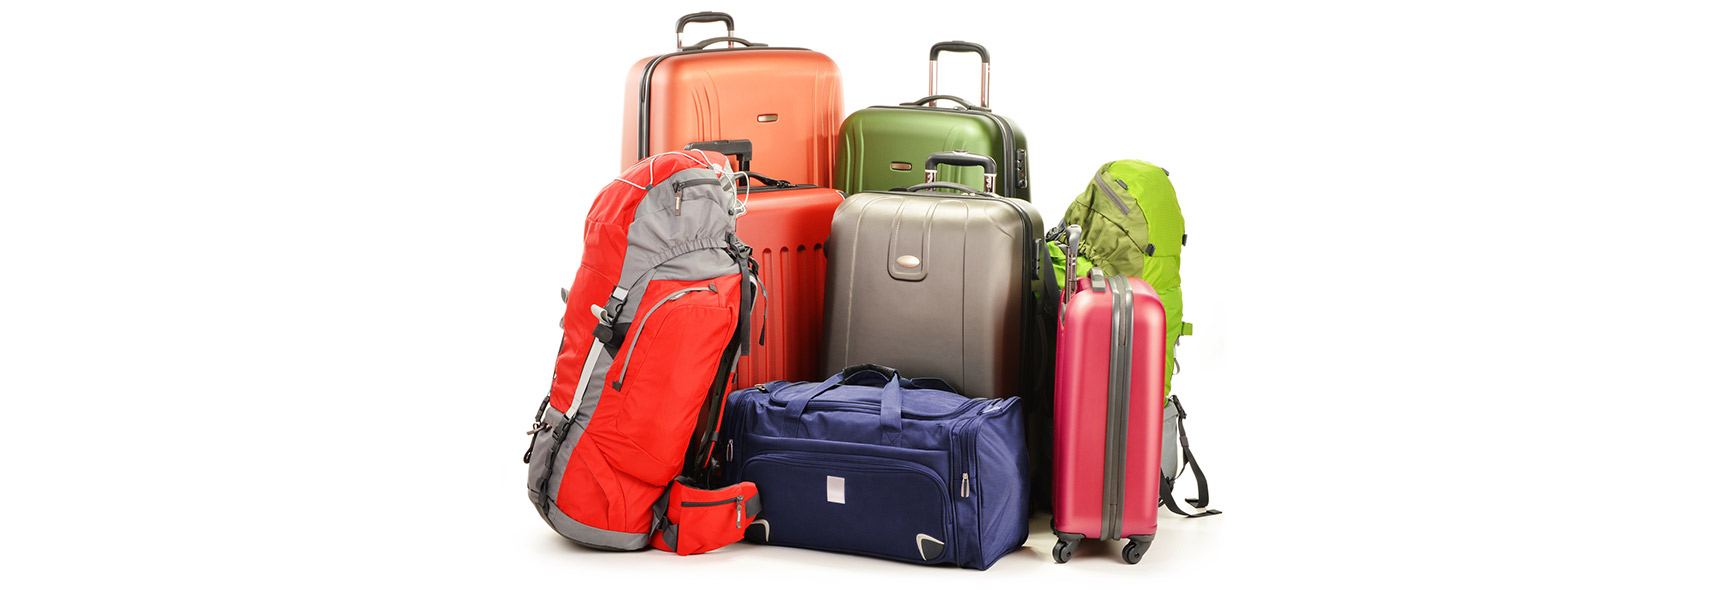 Combien coûtent les excédents de bagages ?